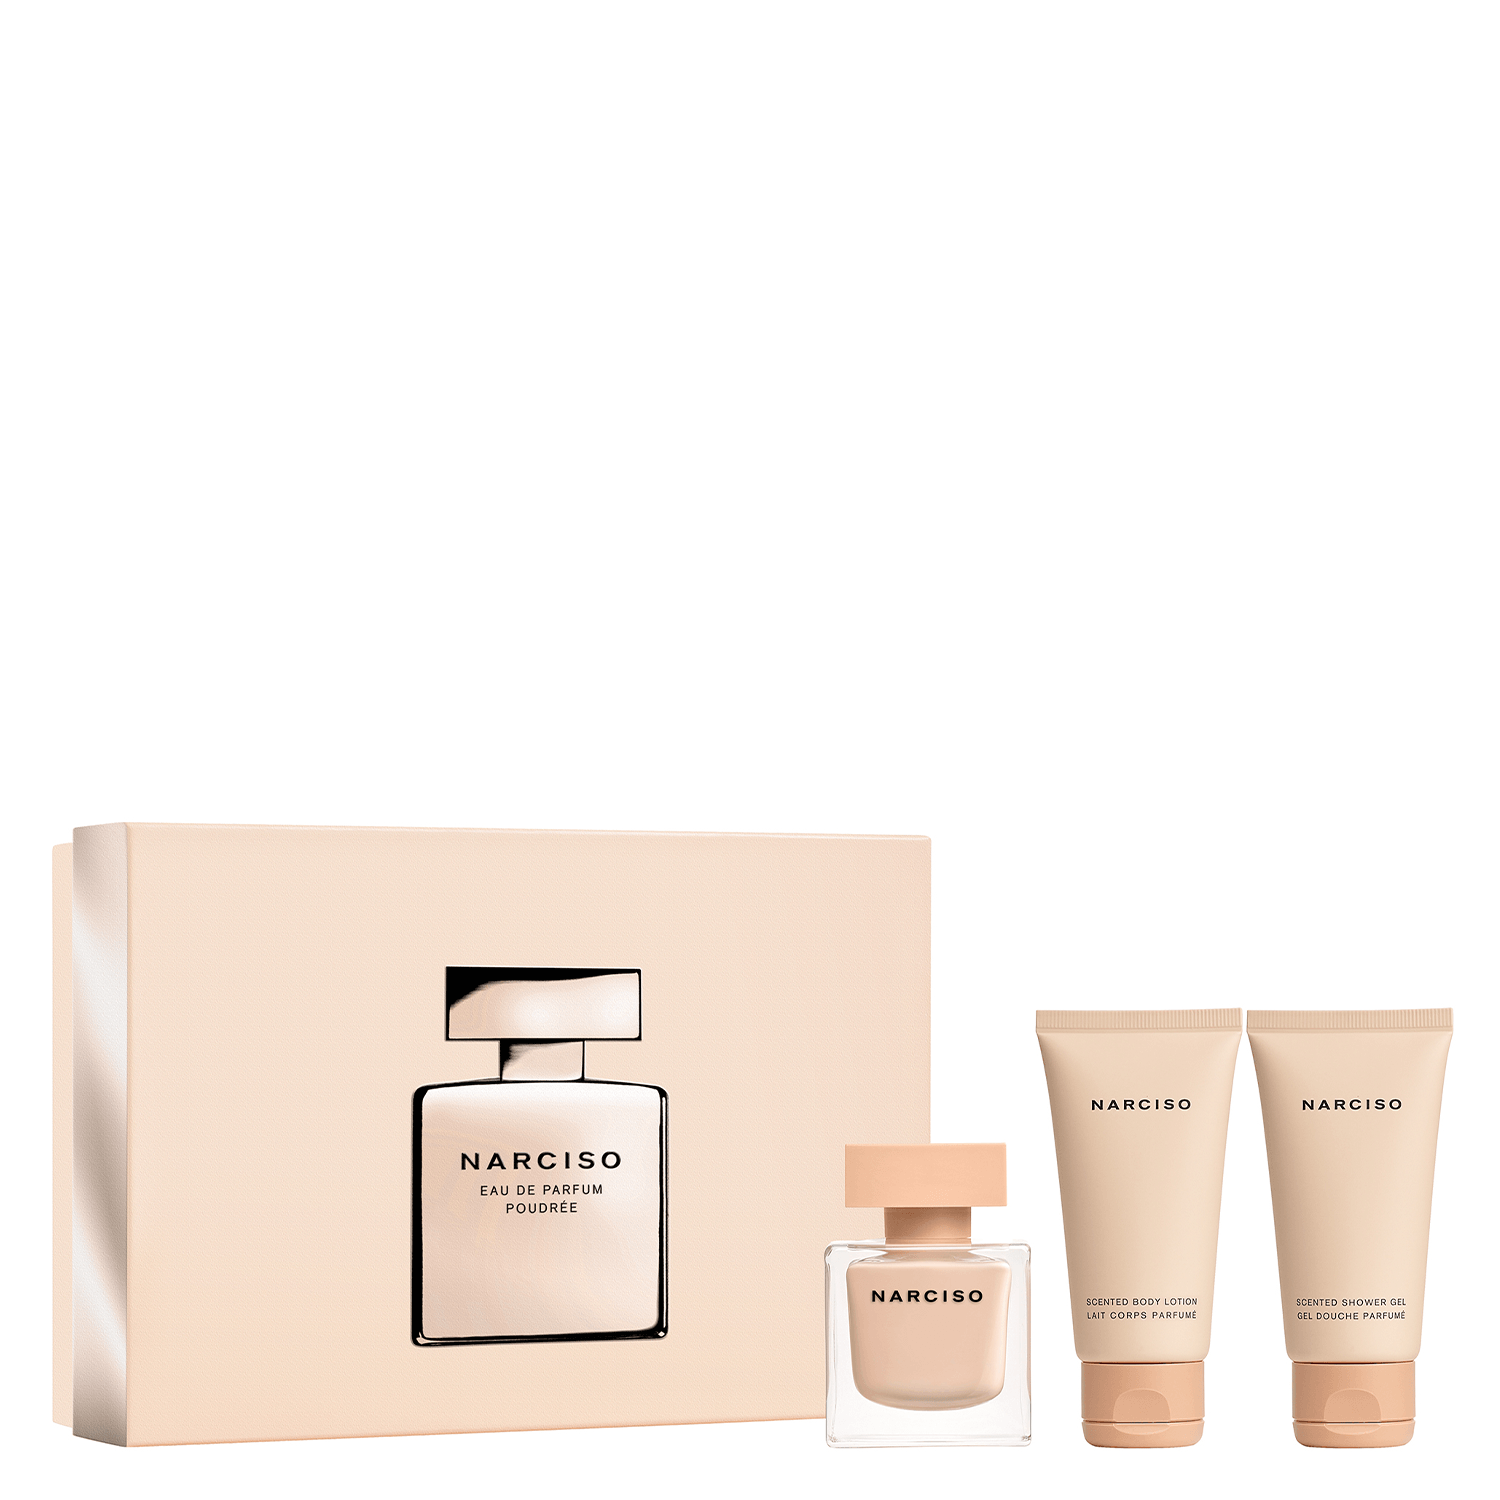 Produktbild von Narciso – Eau de Parfum Poudrée Set